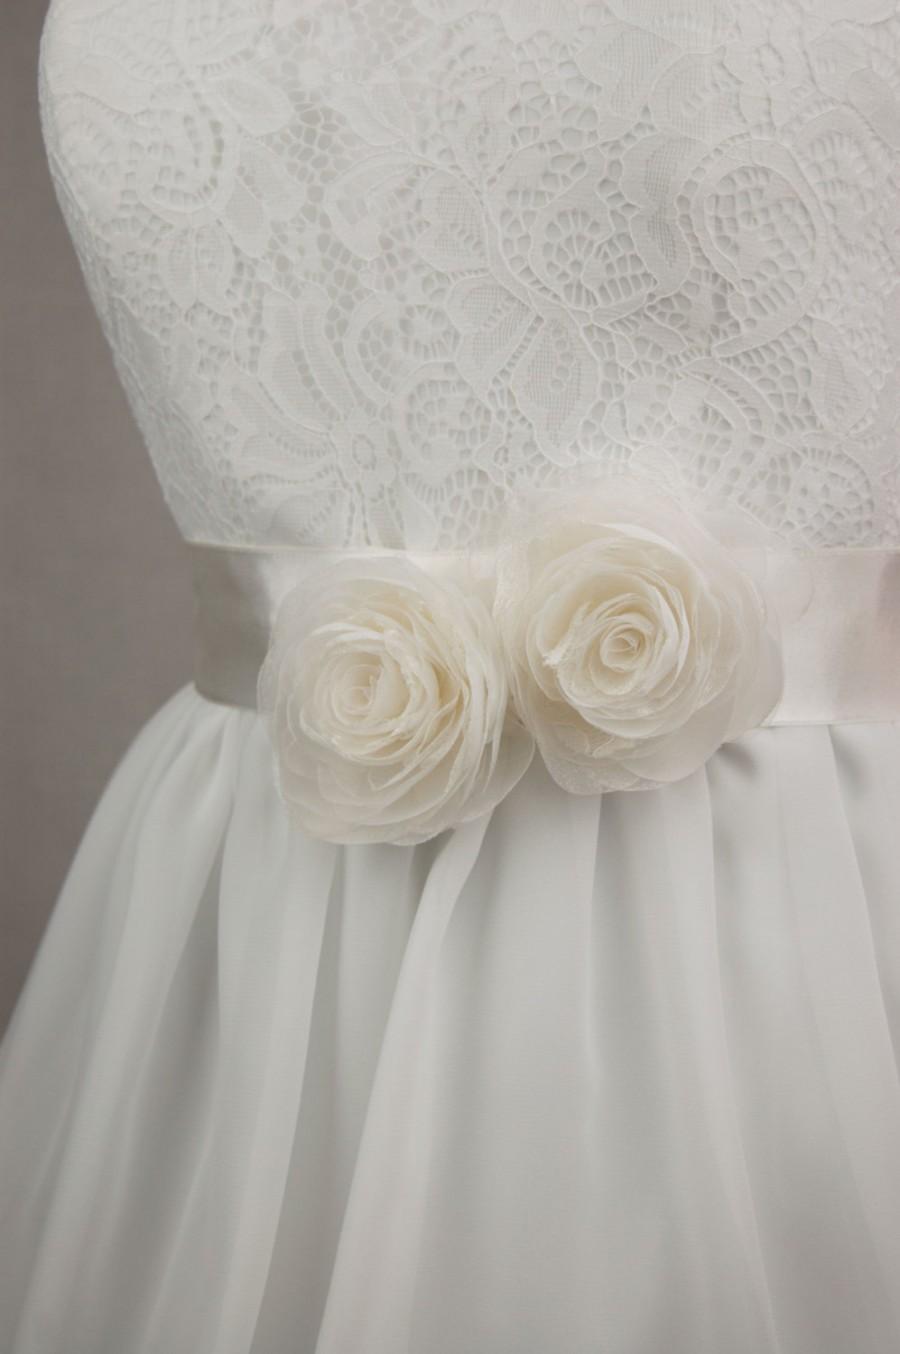 زفاف - Bridal sash - Floral sash - Wedding sash - Wedding belt - Bridal belt sash - Bridal dress sash